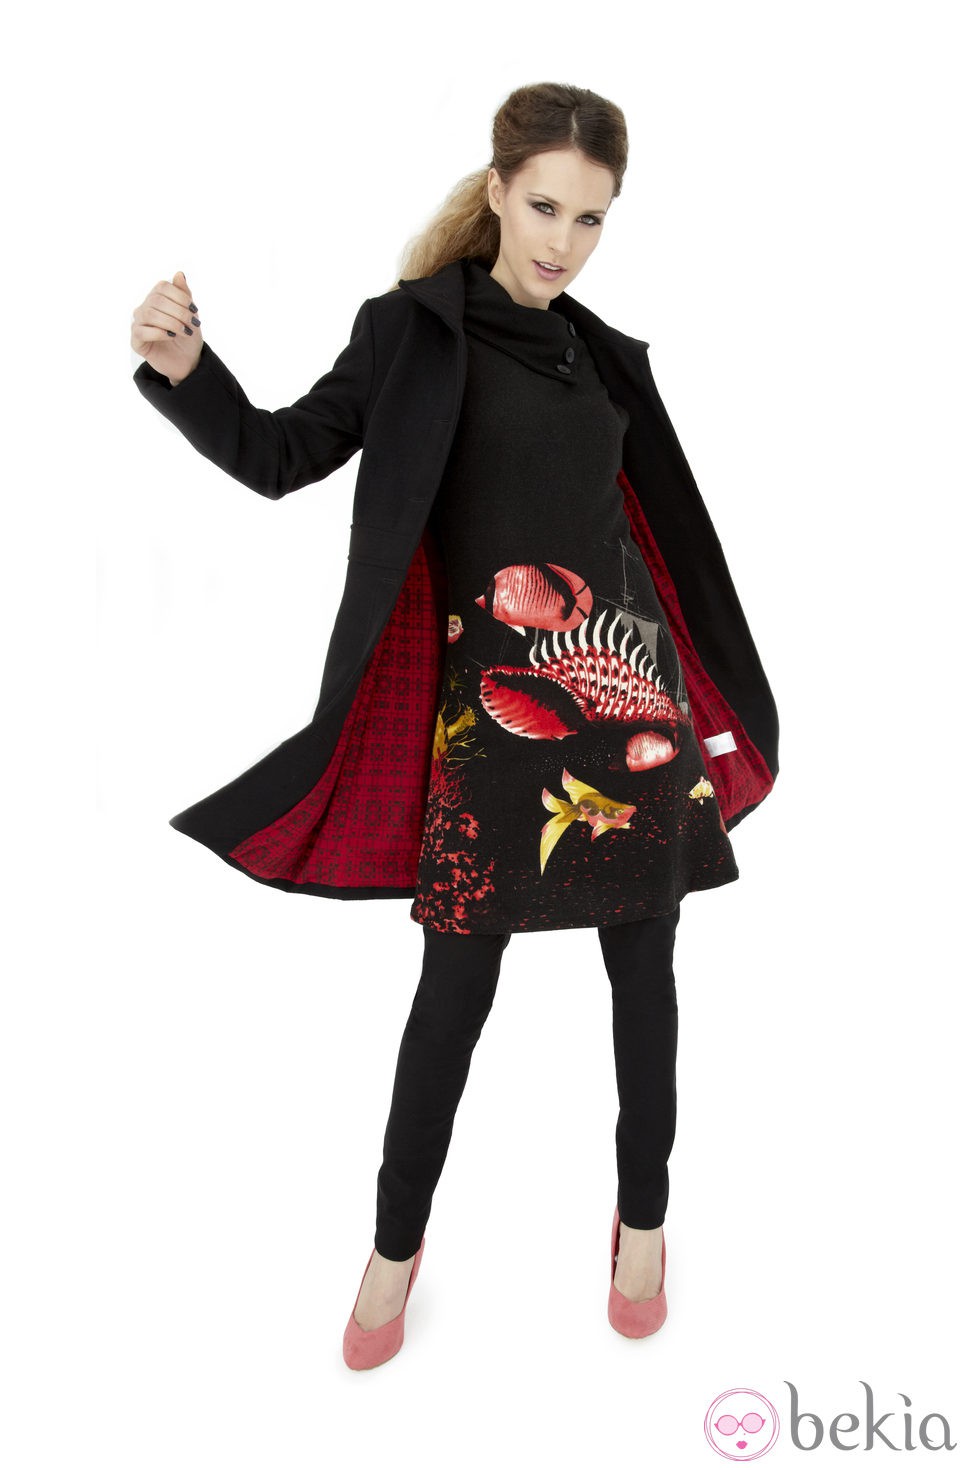 Vestido y abrigo negros de la colección otoño/invierno 2013/2014 de Smash!